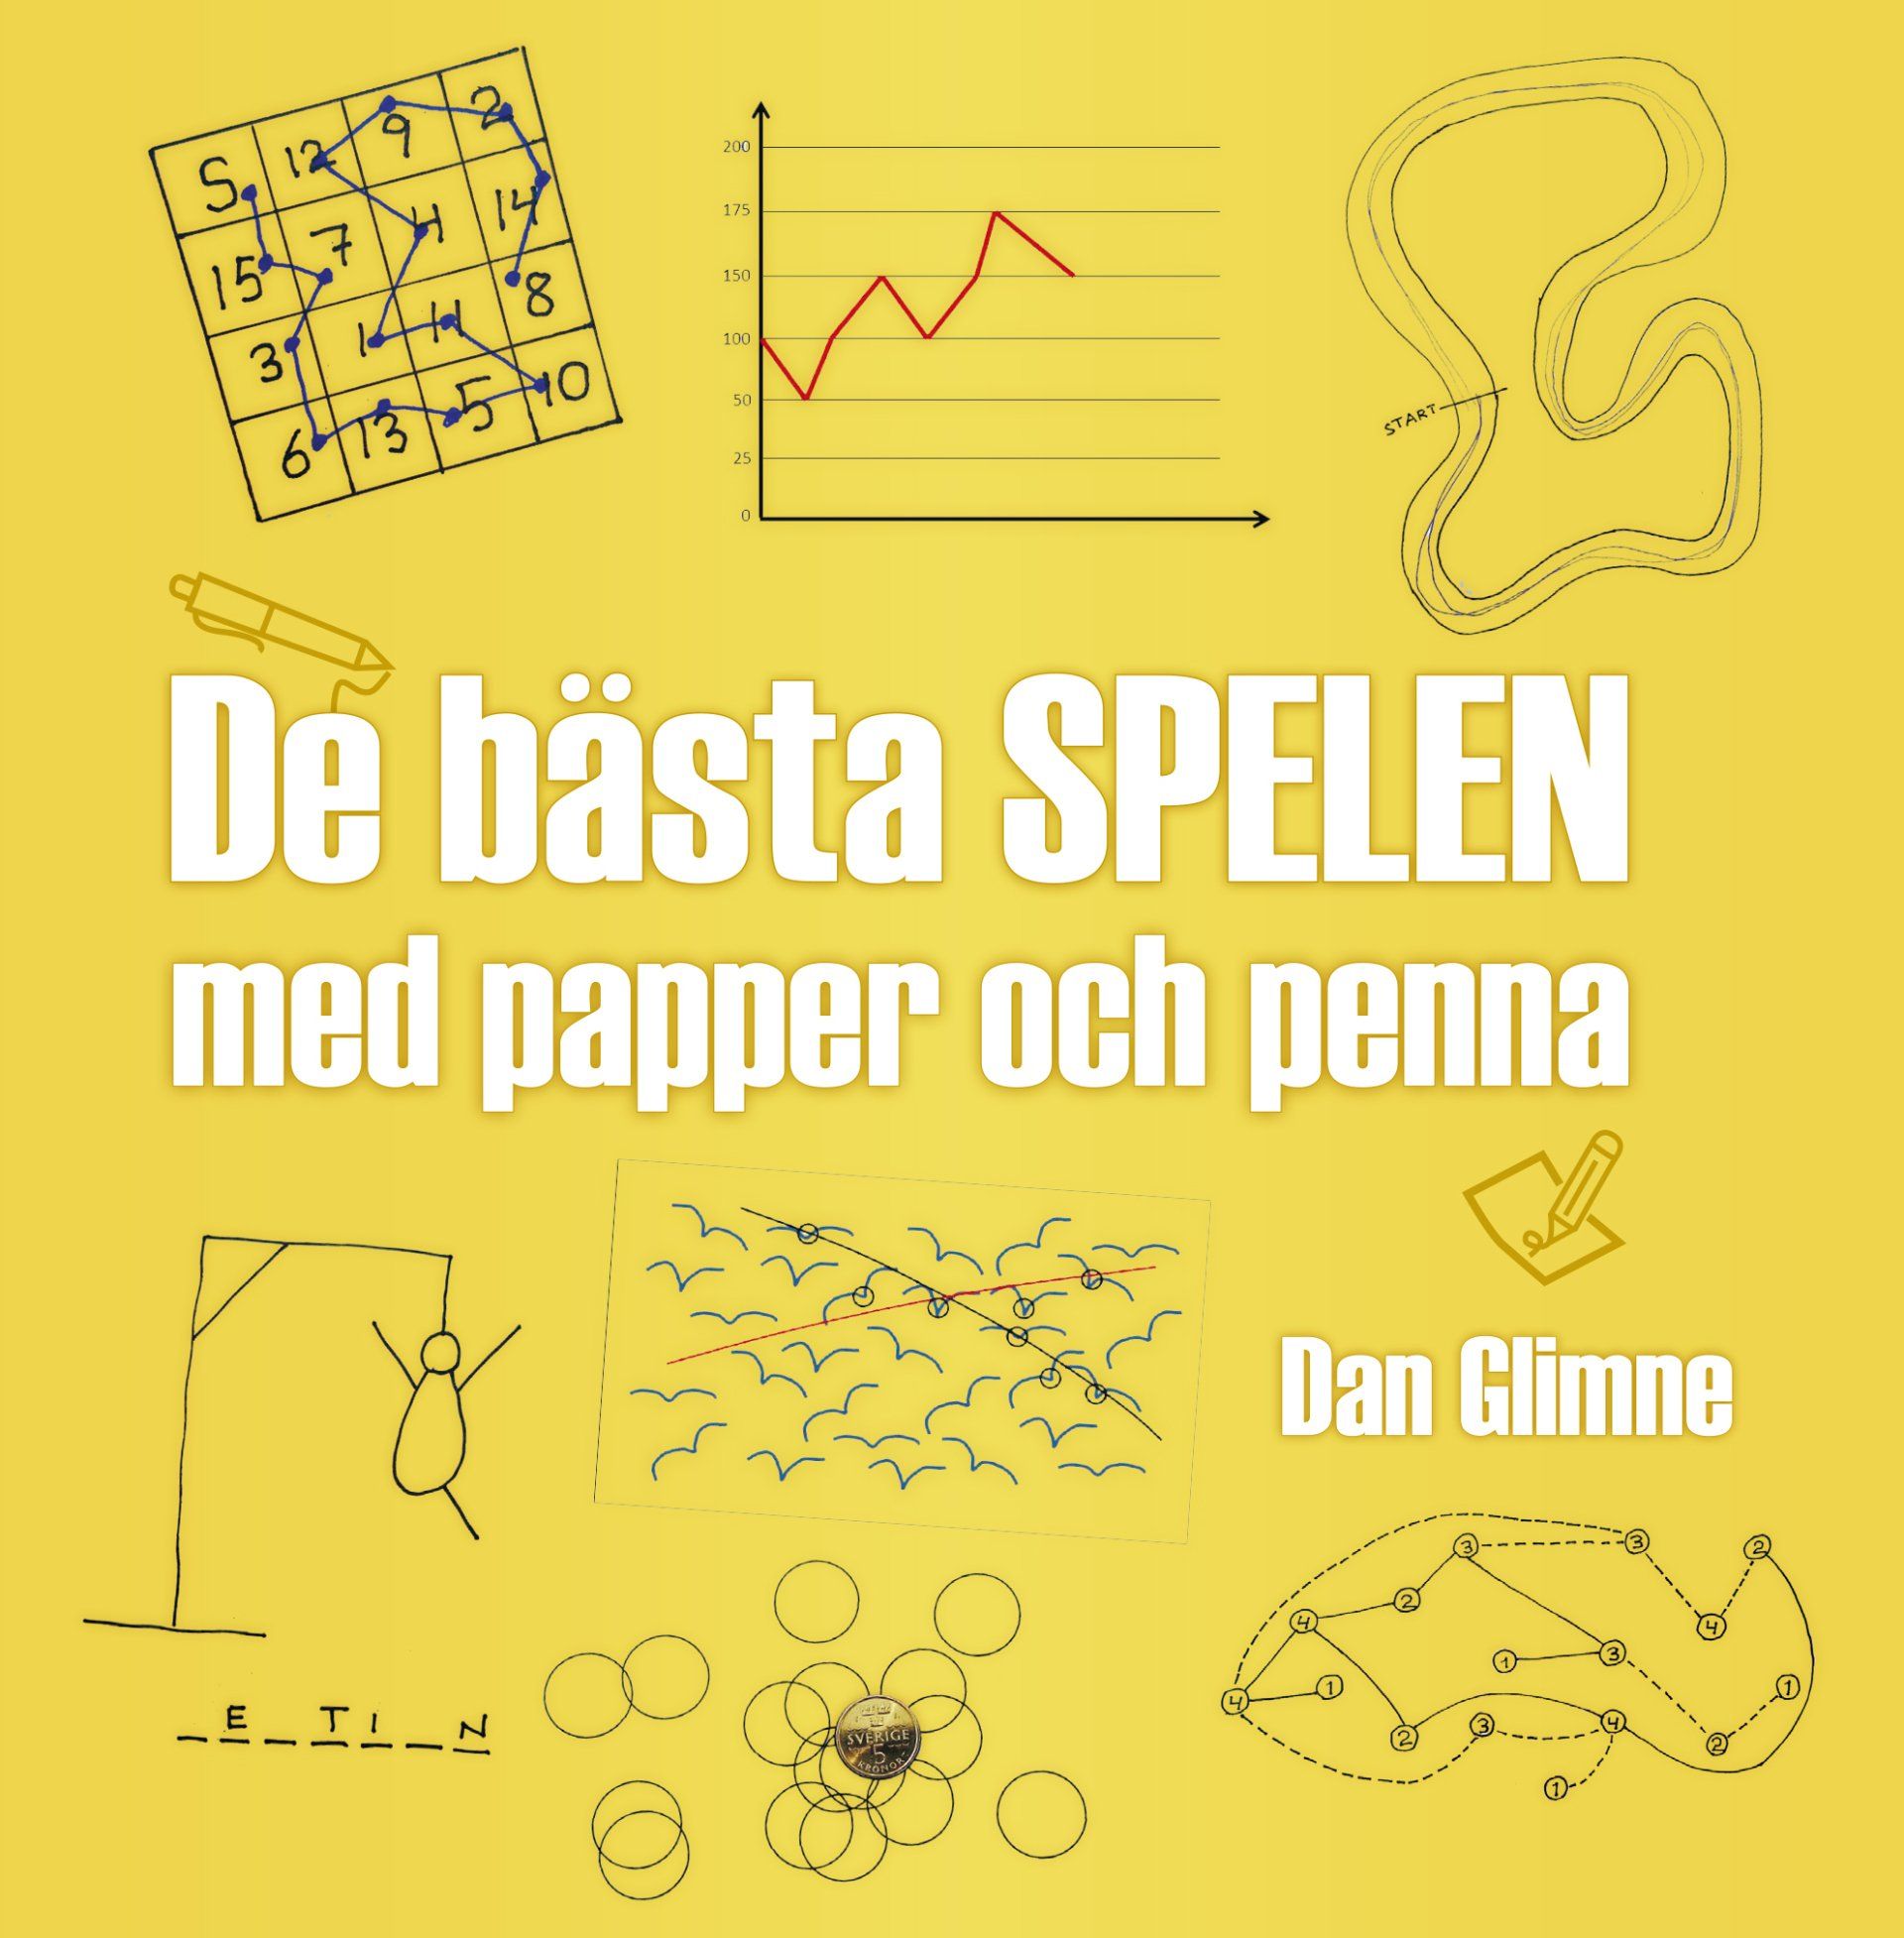 Faktaboken De bästa spelen med papper och penna är skriven av Dan Glimne på Stevali Bokförlag.